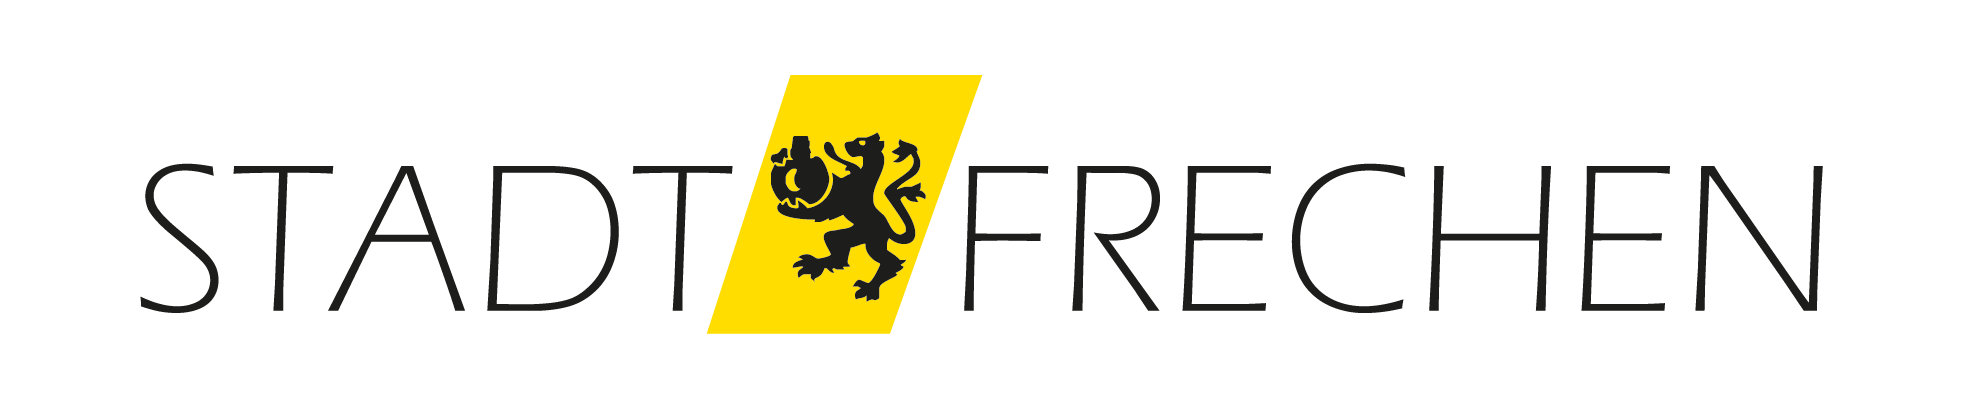 Logo Stadt Frechen